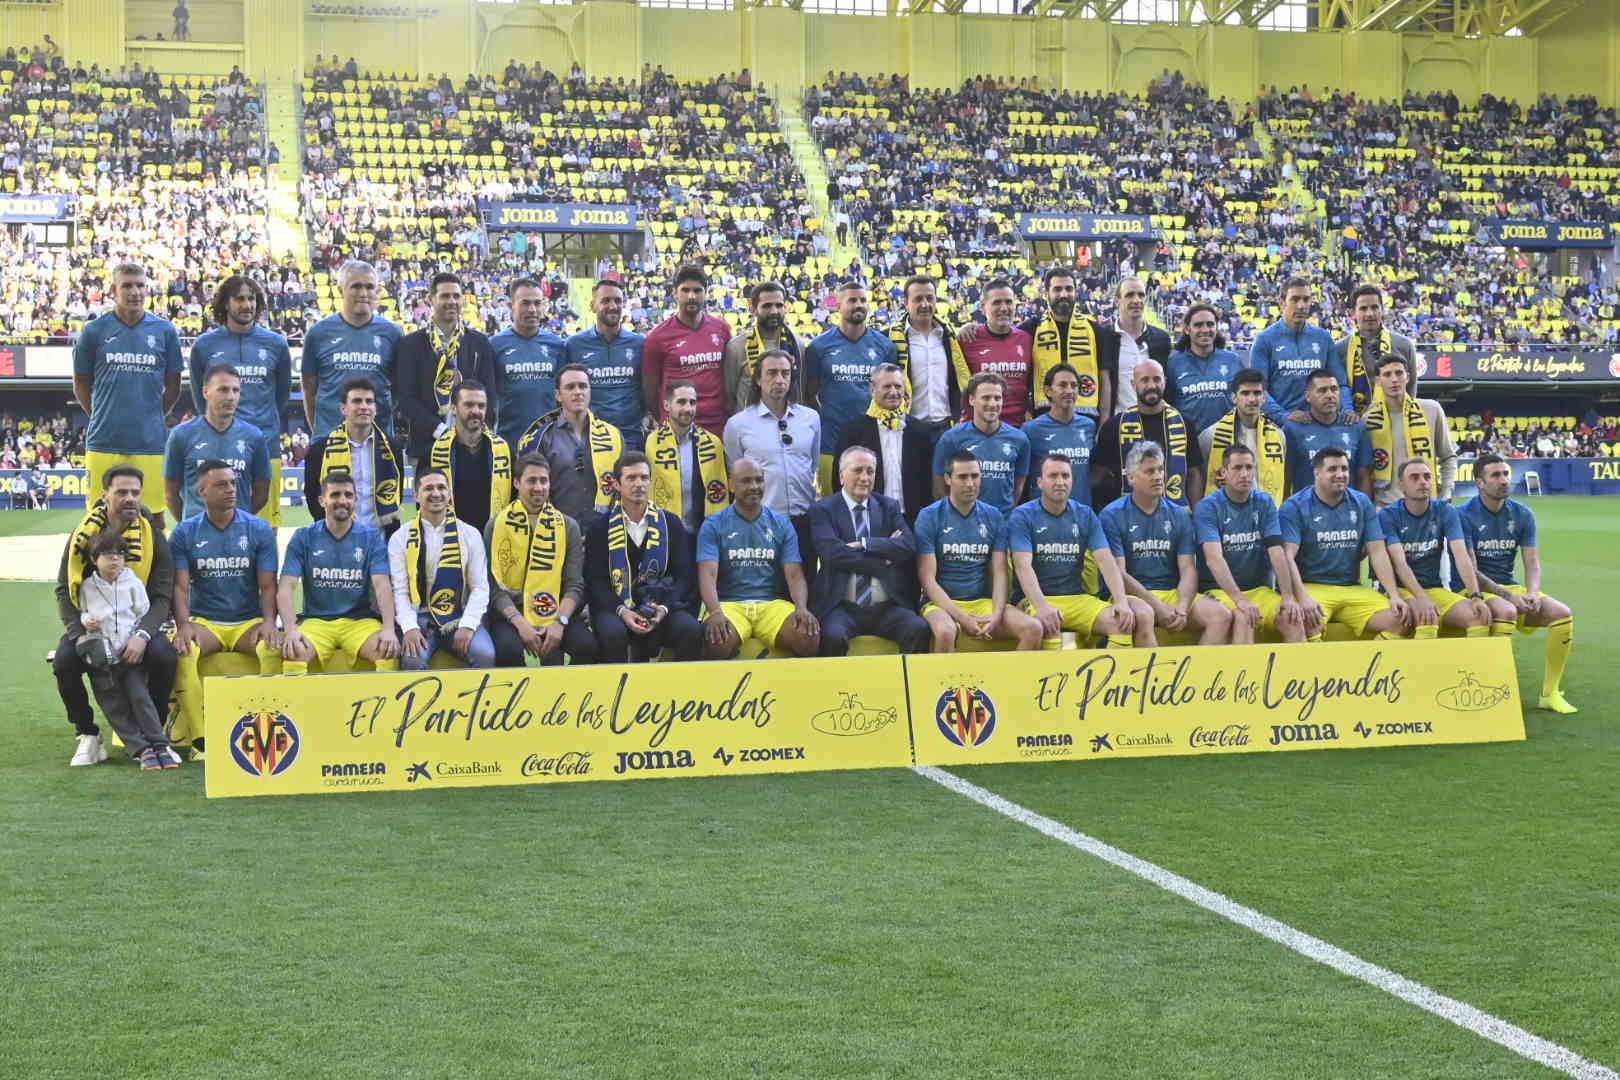 GALERÍA | No te pierdas el partido de Leyendas del Villarreal CF